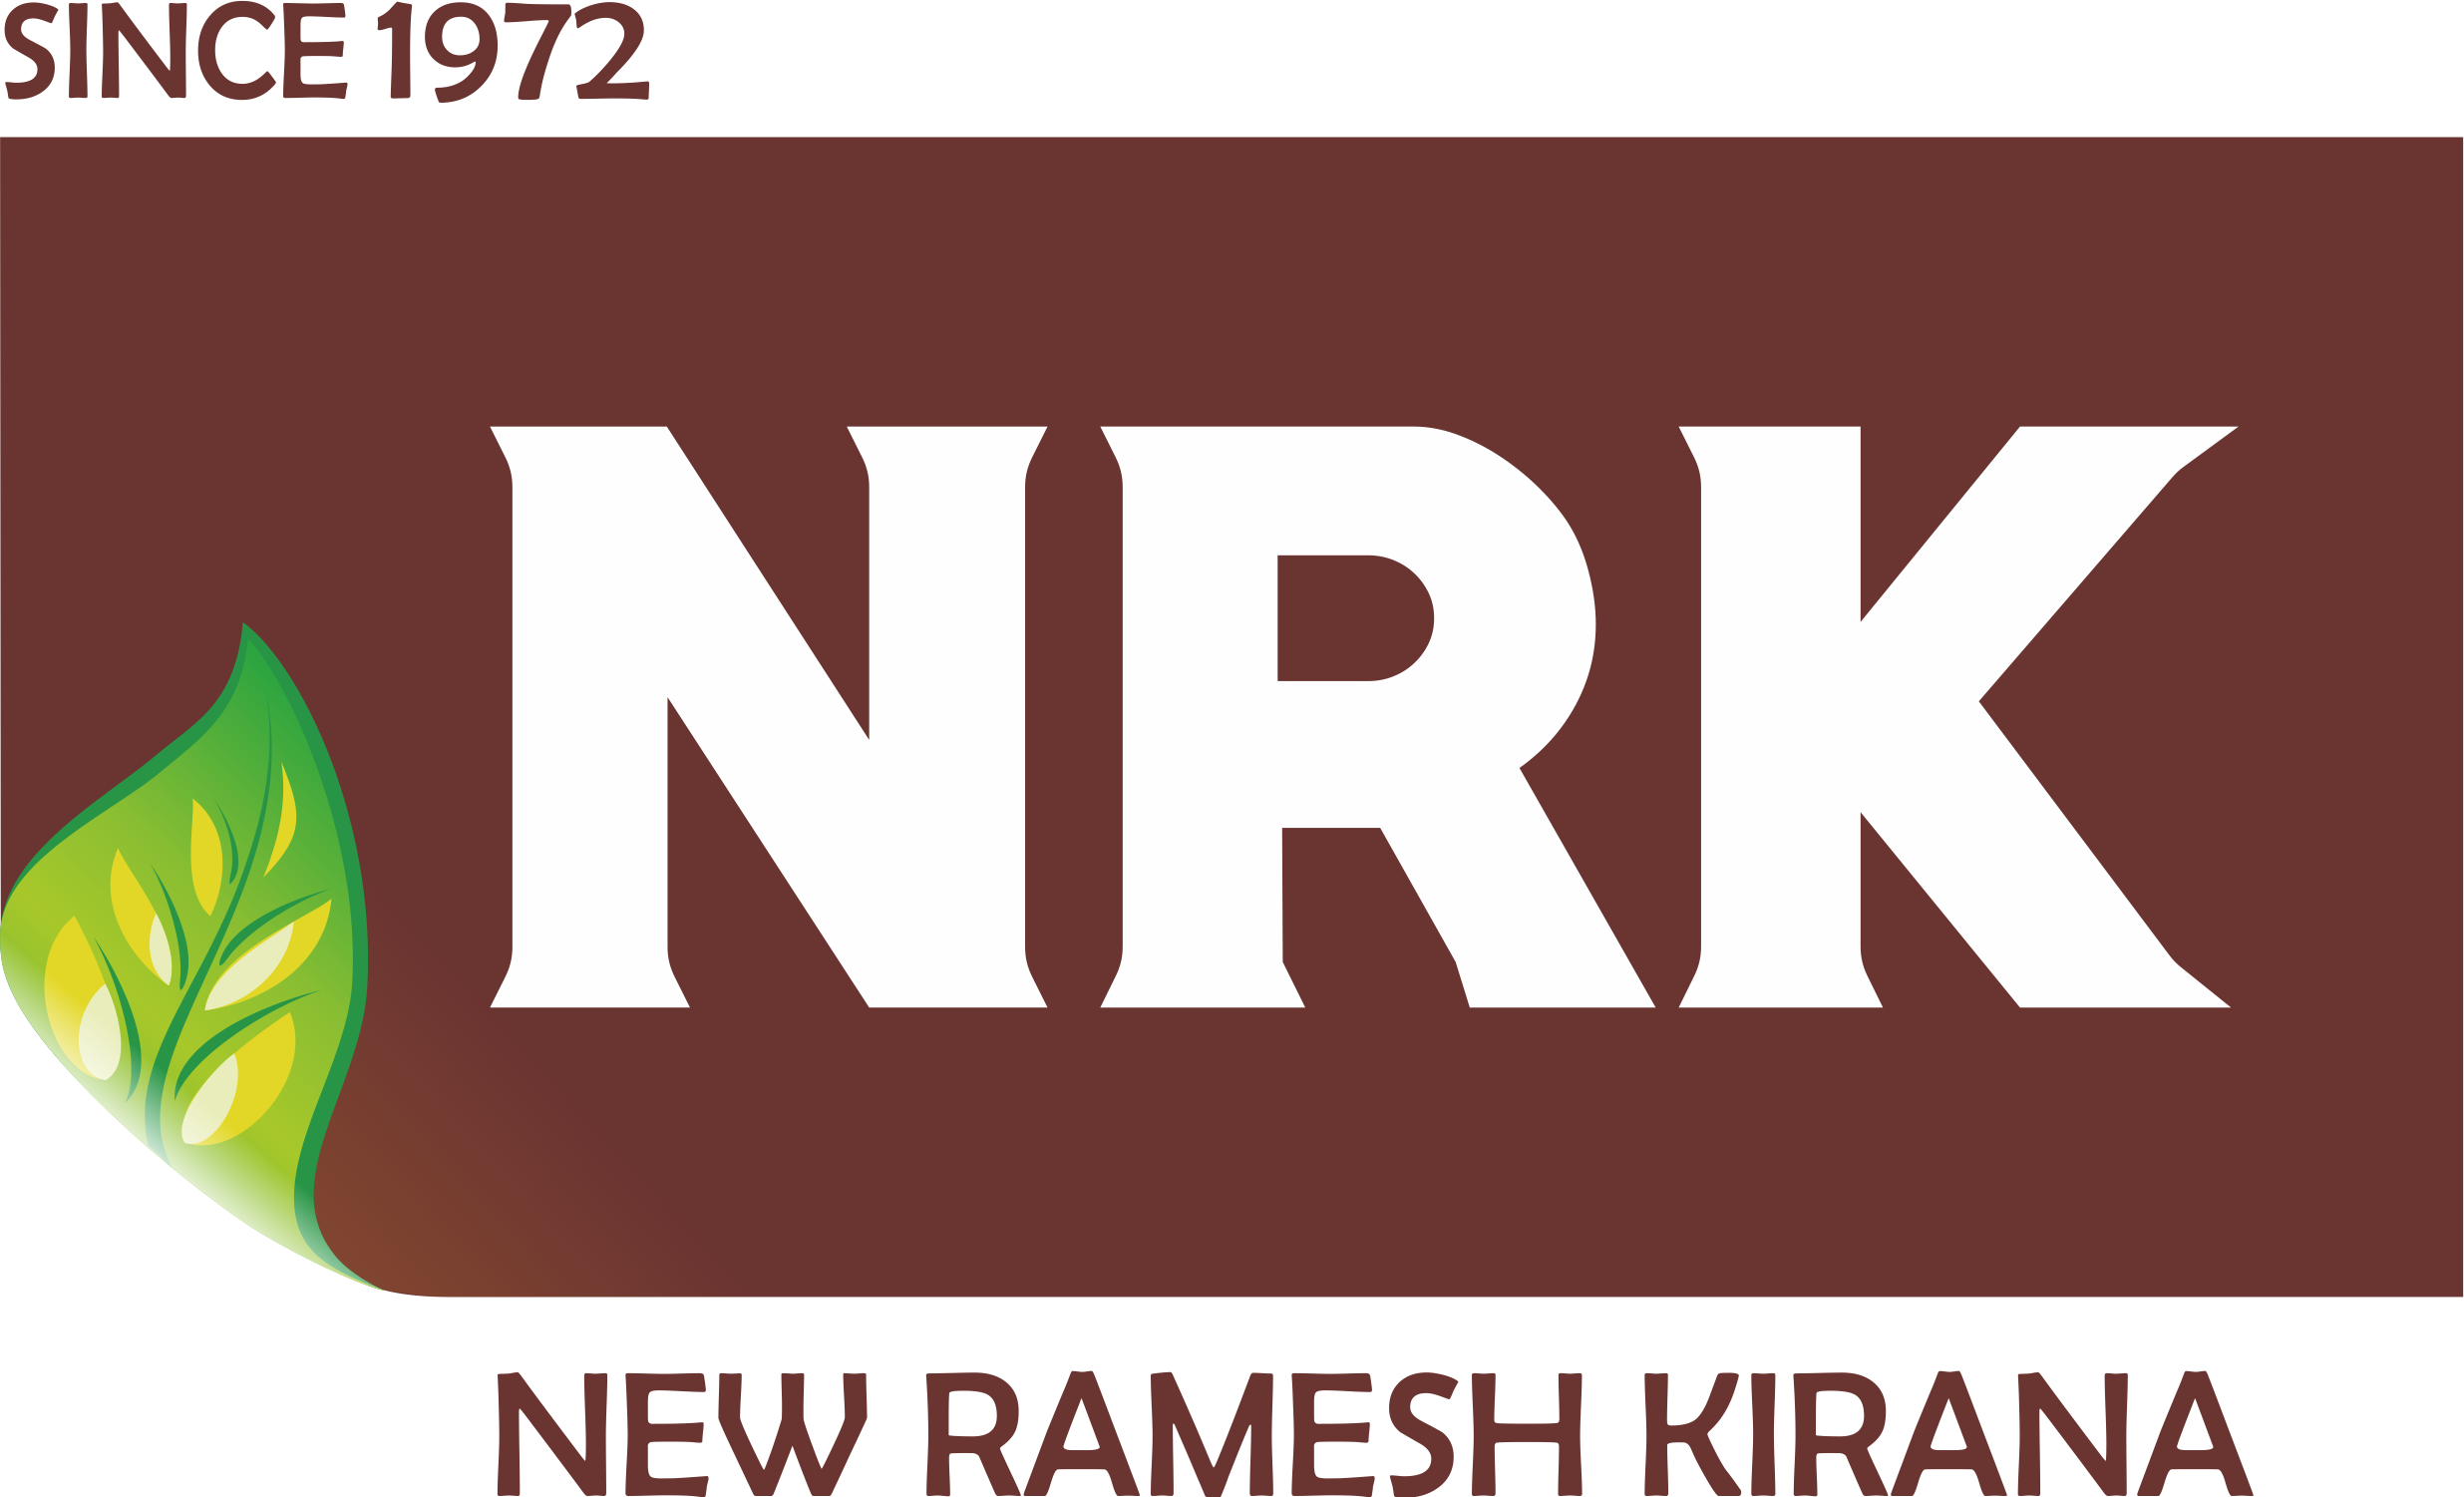 New Ramesh Kirana